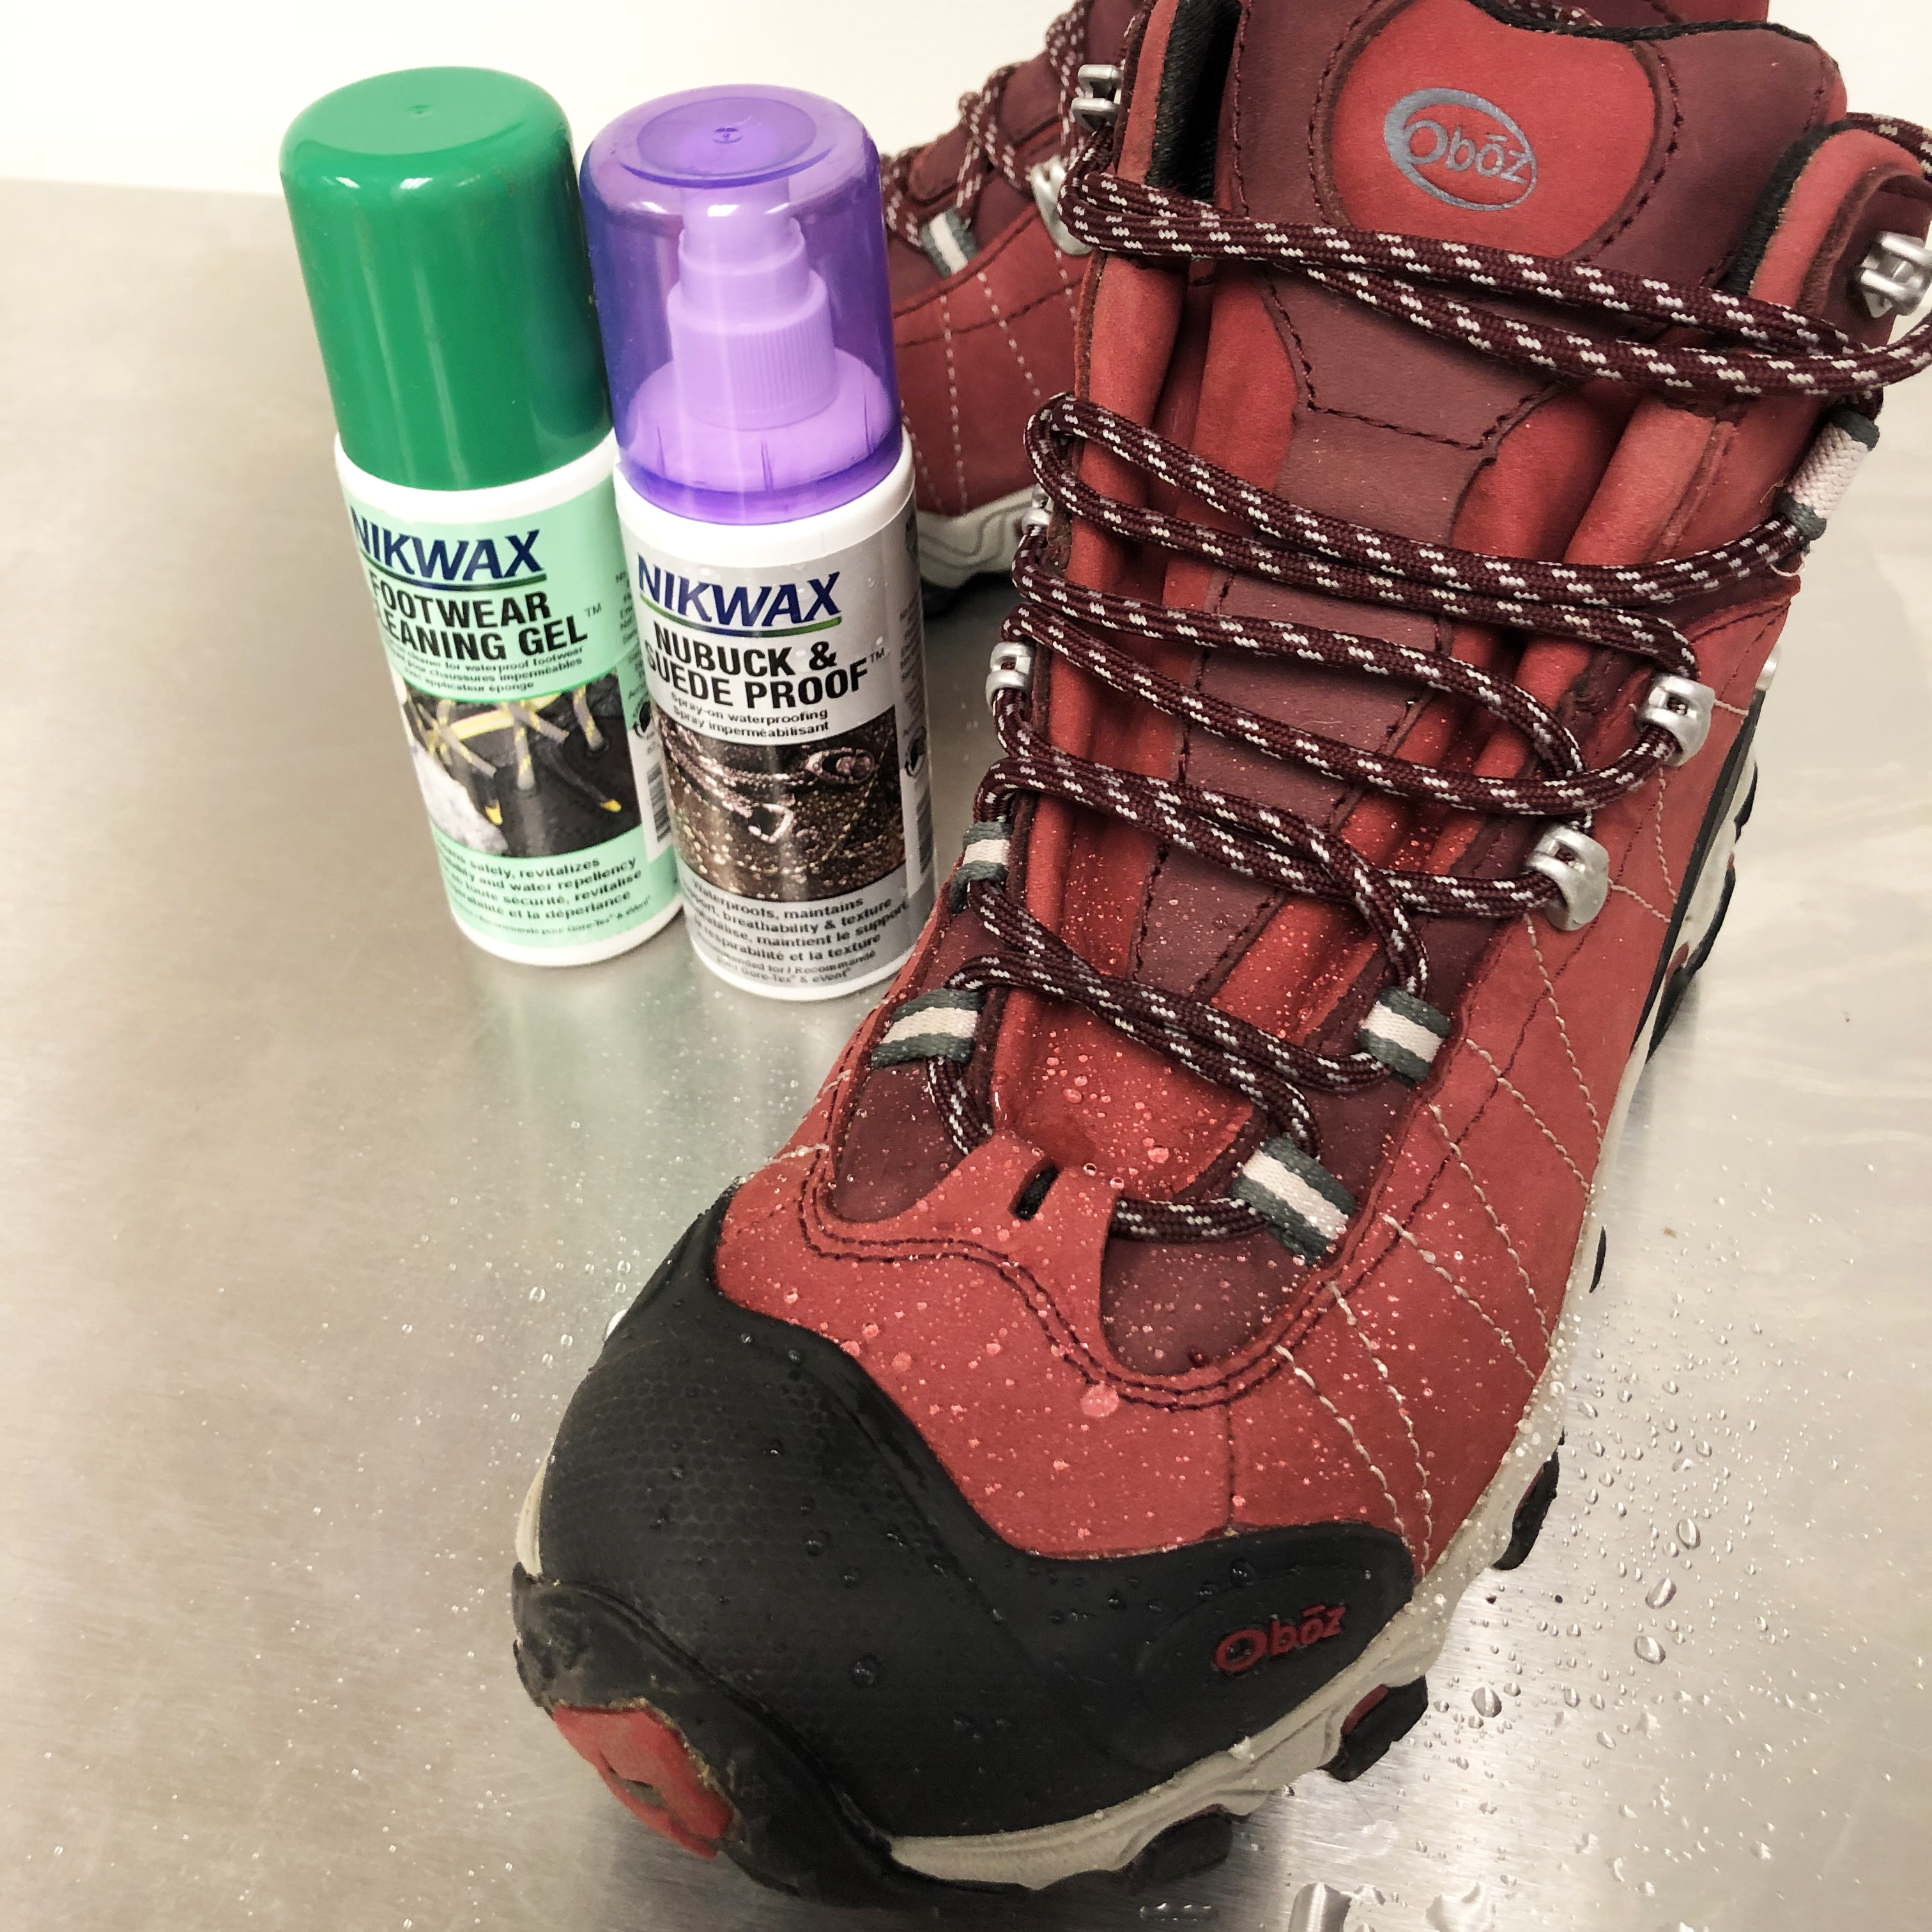 walking boot cleaning kit